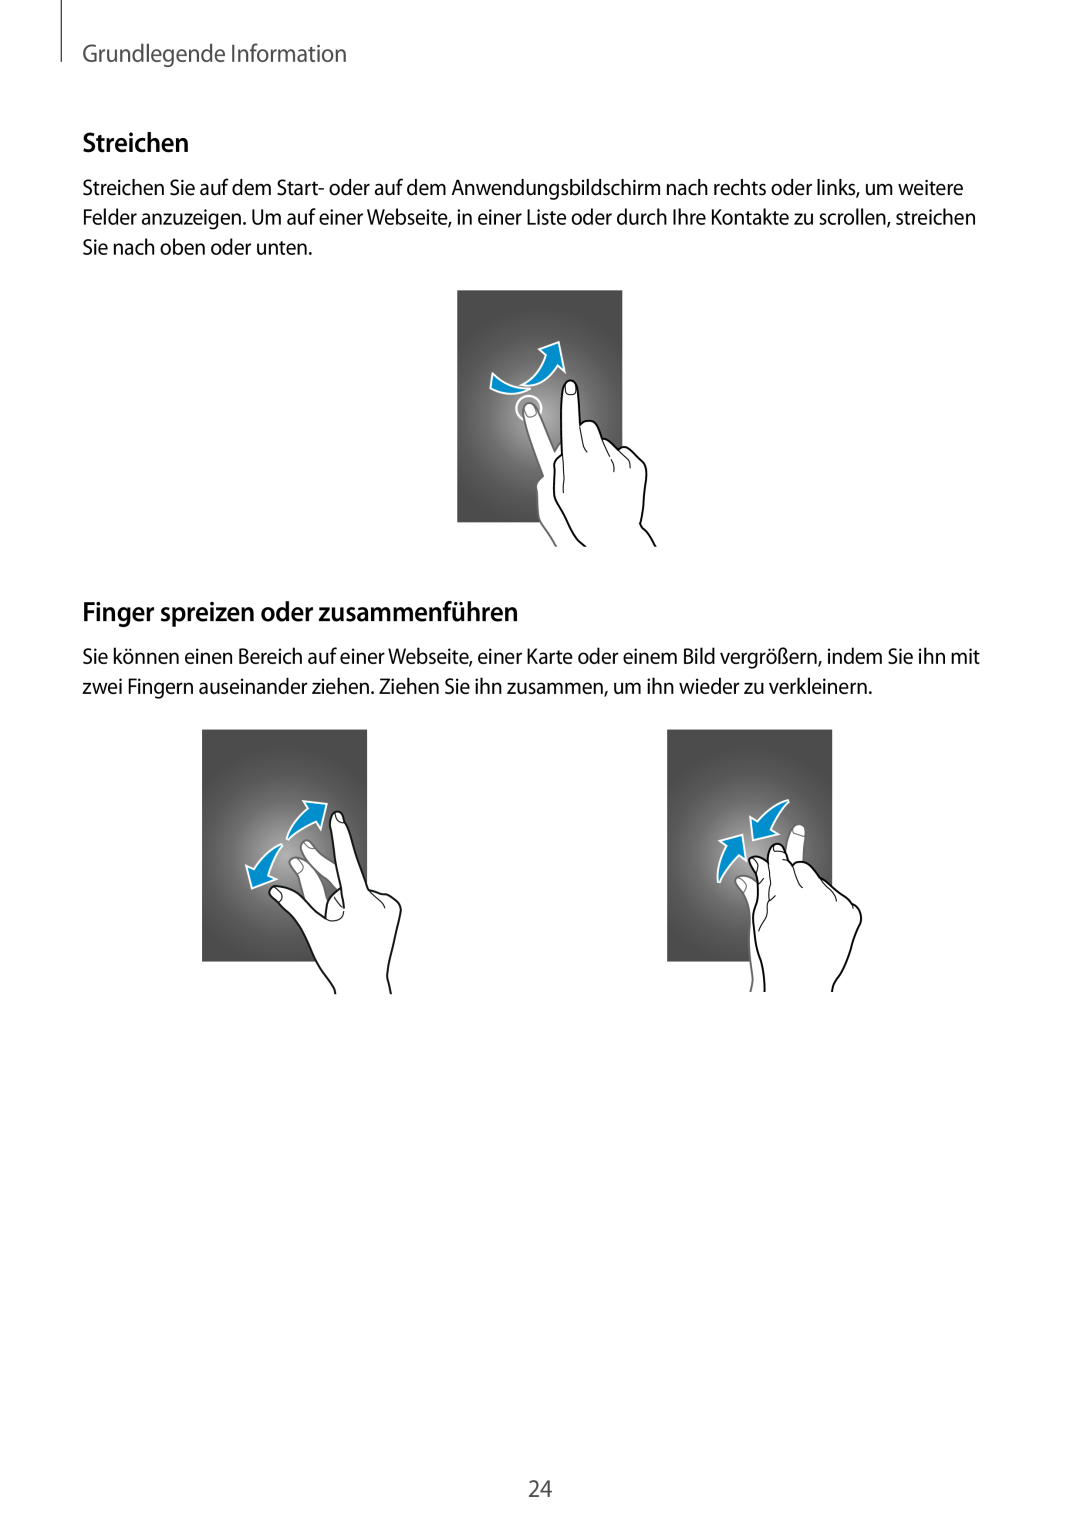 Samsung SM-G901FZKADTM, SM-G901FZKACOS manual Streichen, Finger spreizen oder zusammenführen, Grundlegende Information 